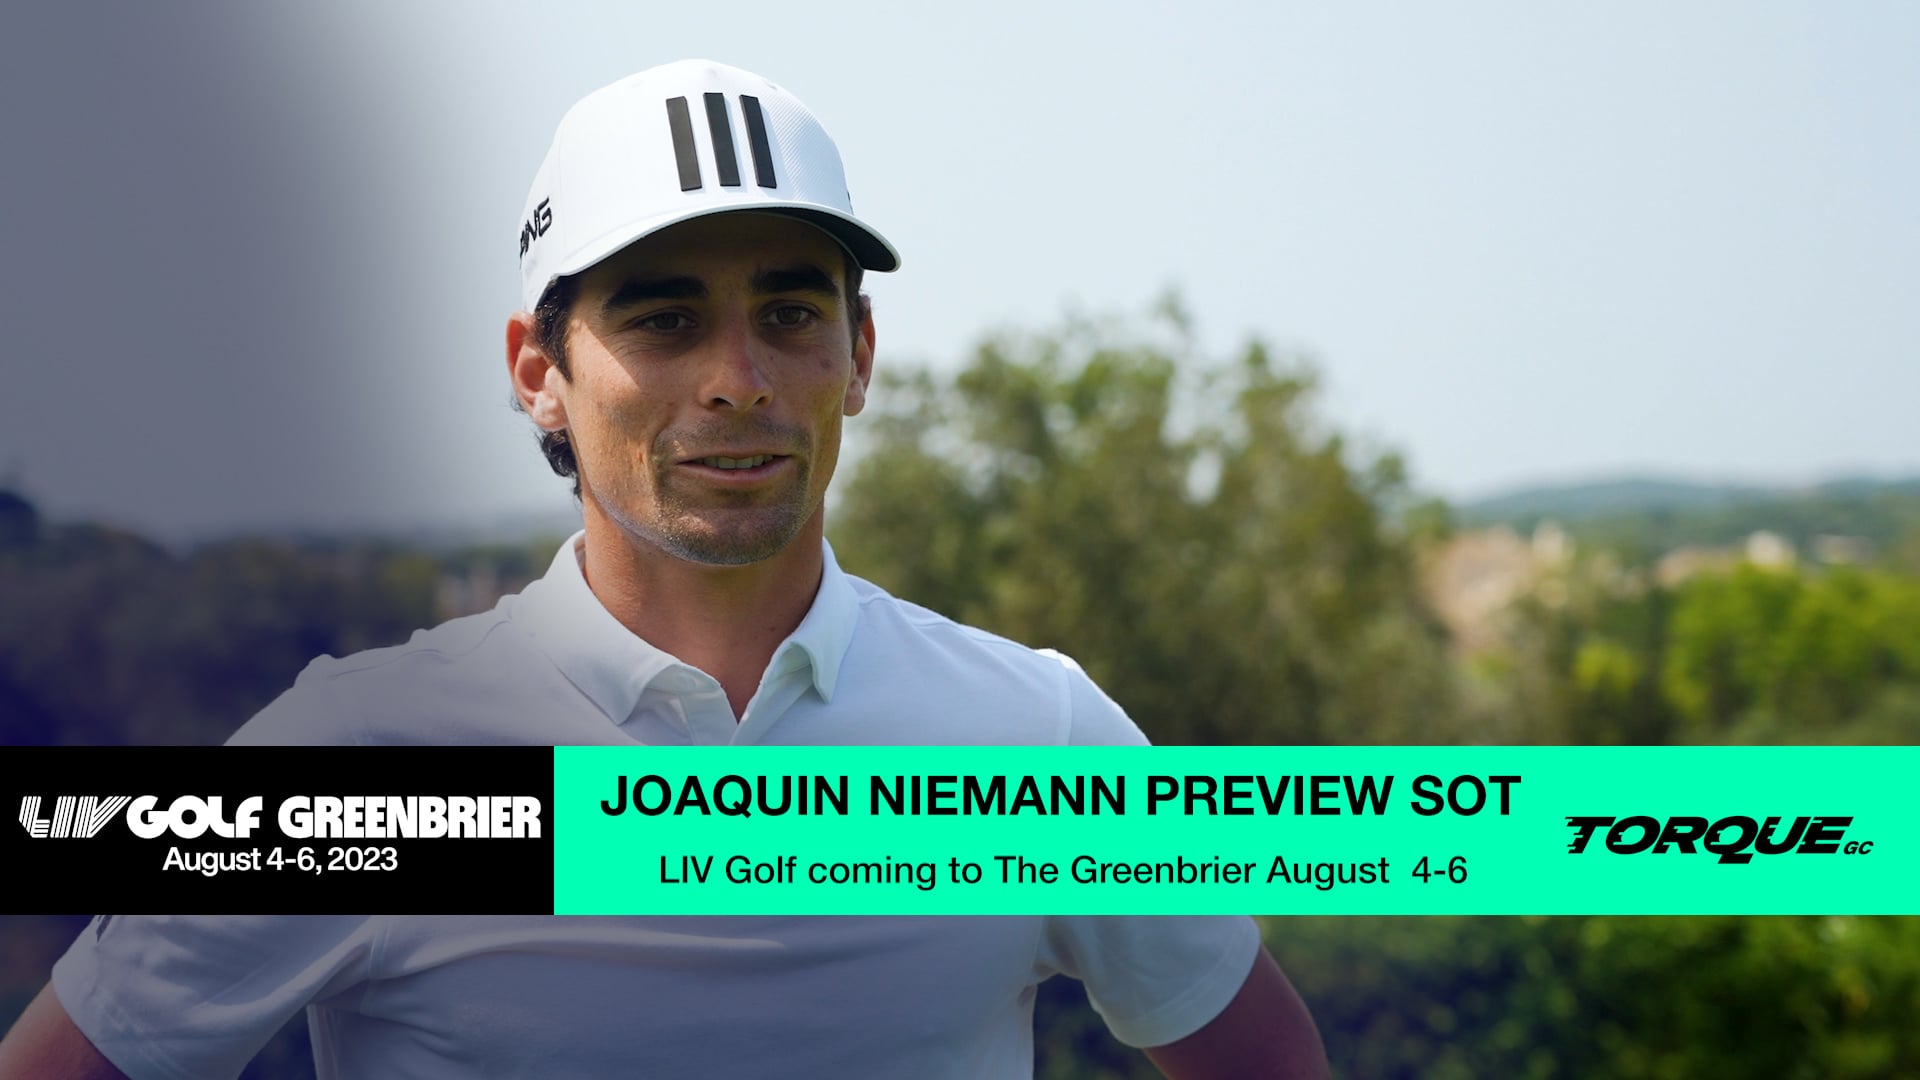 Joaquin Niemann LIV Golf Greenbrier Preview SOT on Vimeo